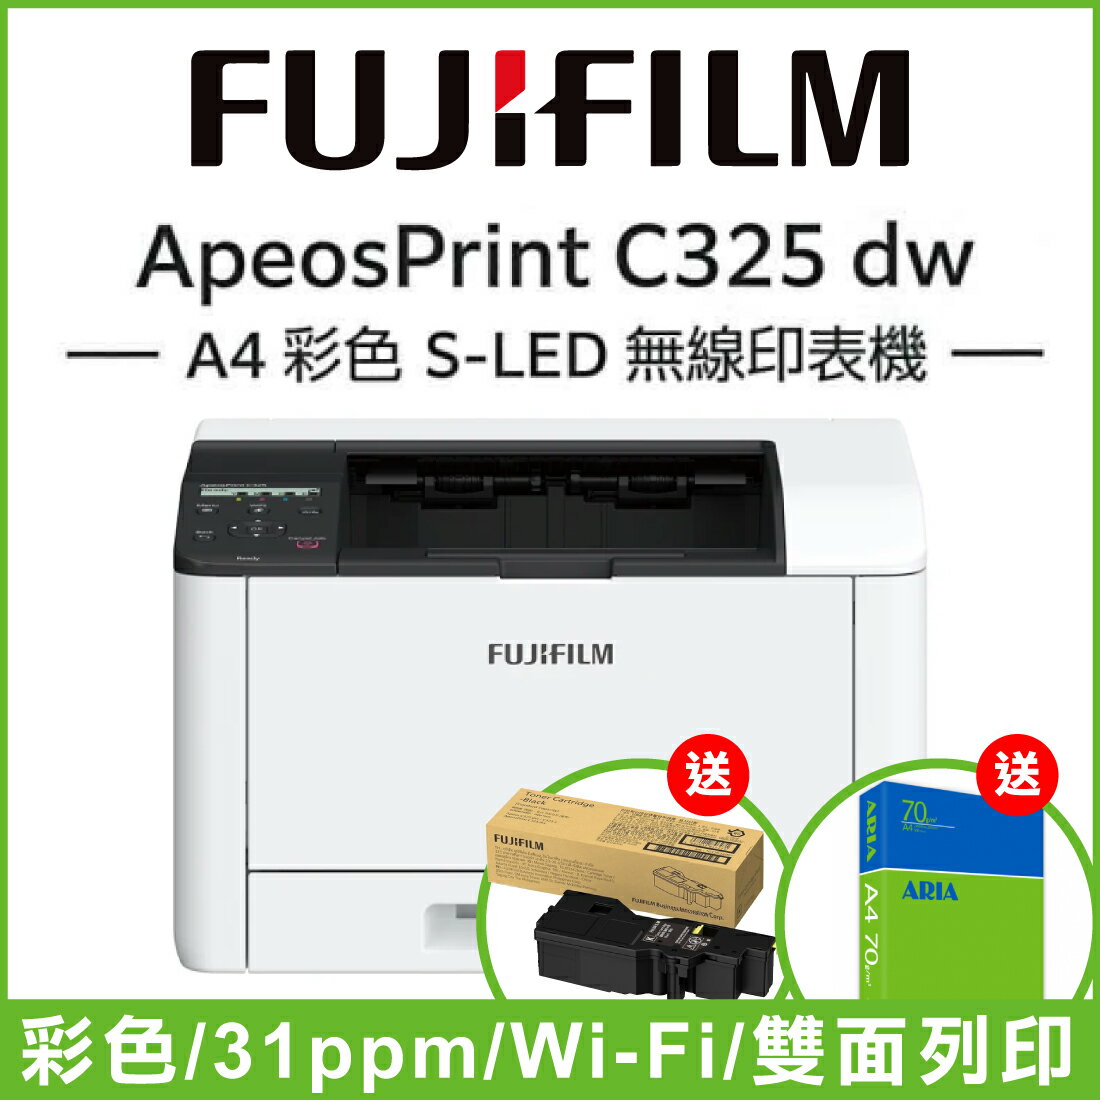 【跨店享22%點數回饋+滿萬加碼抽獎】【買就送碳粉】富士軟片 fujifilm apeosprint c325dw a4彩色雙面無線雷射印表機